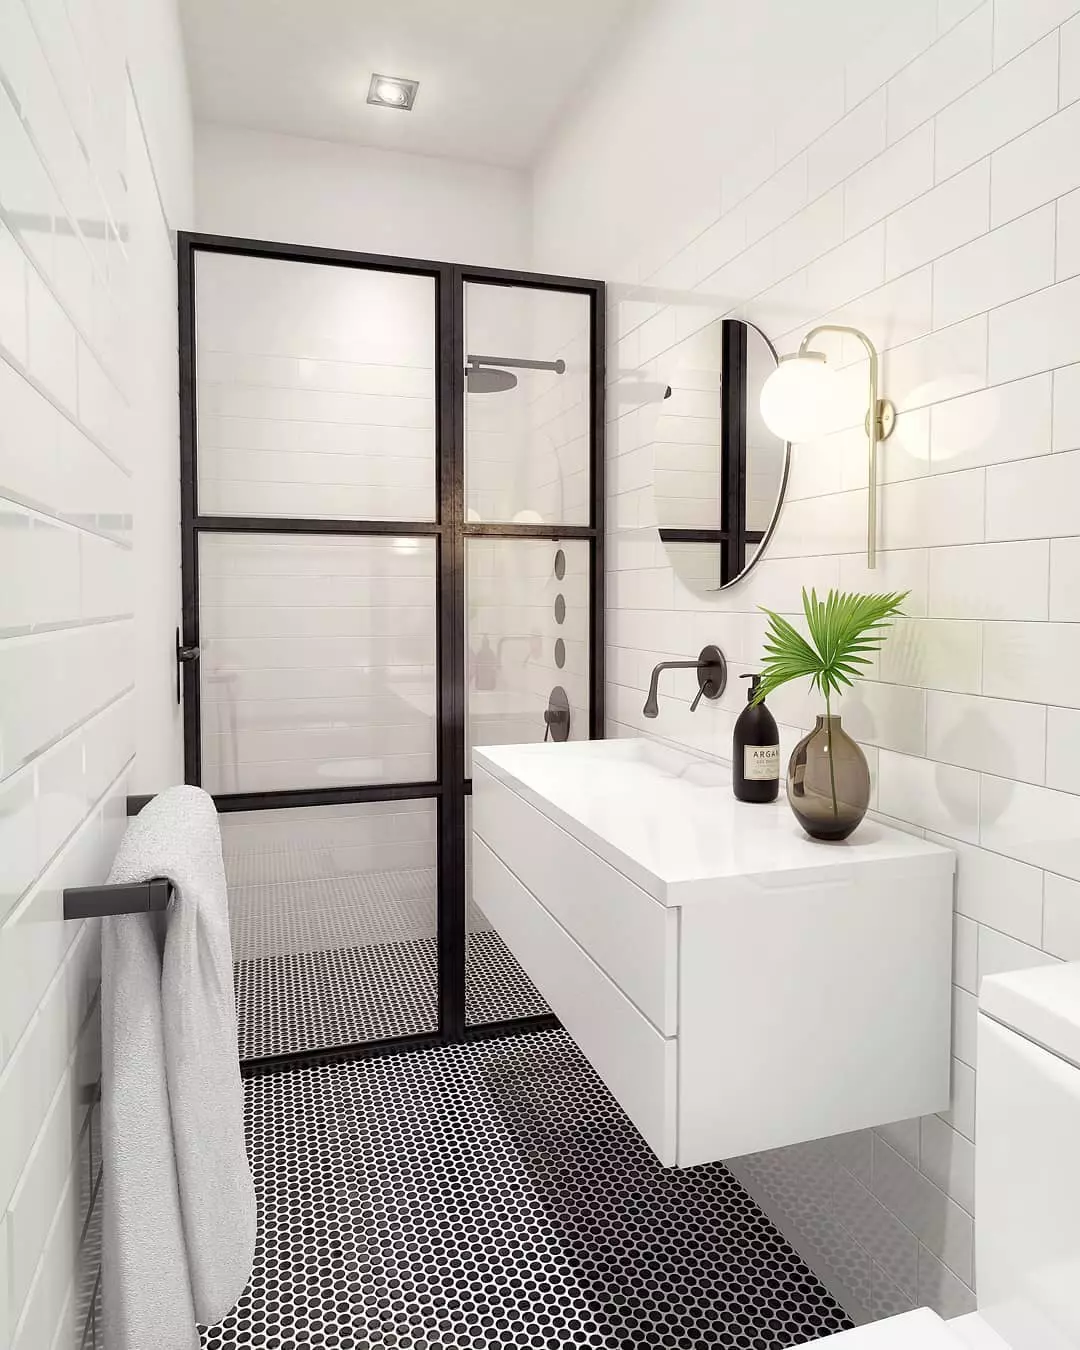 Gagasan untuk pendaftaran kamar mandi gabungan kecil di apartemen: Foto